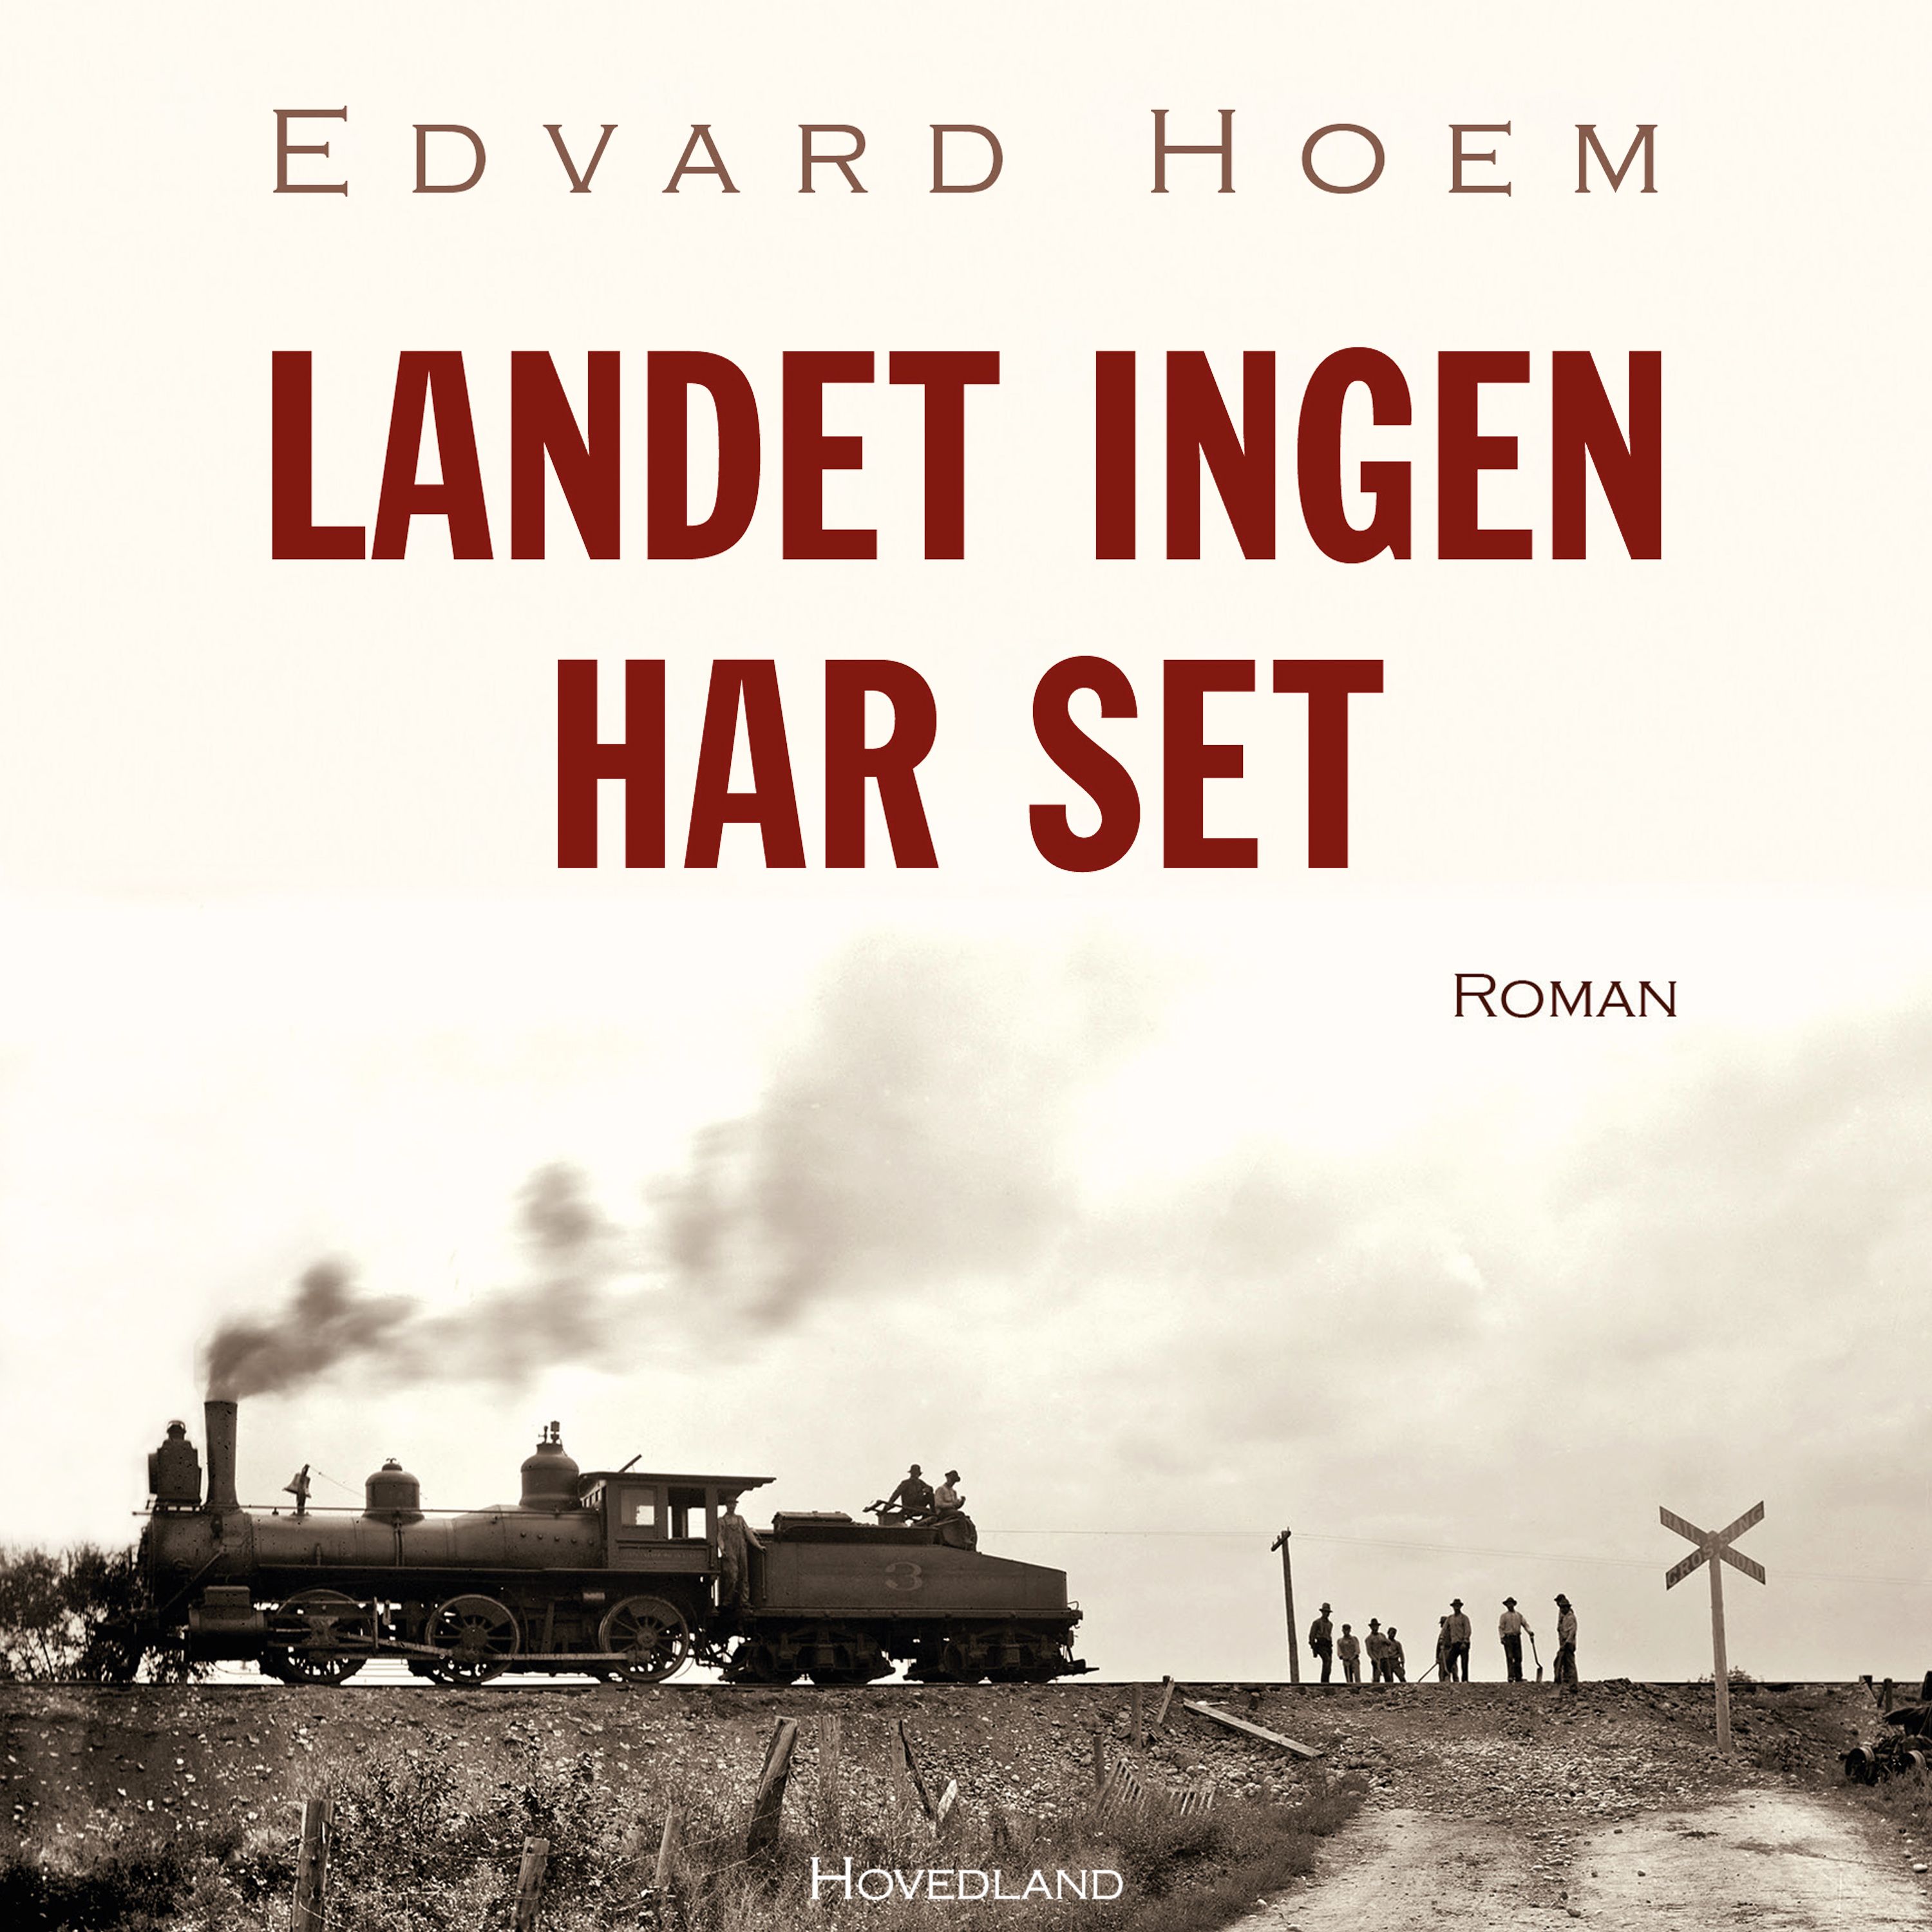 Landet ingen har set, ljudbok av Edvard Hoem